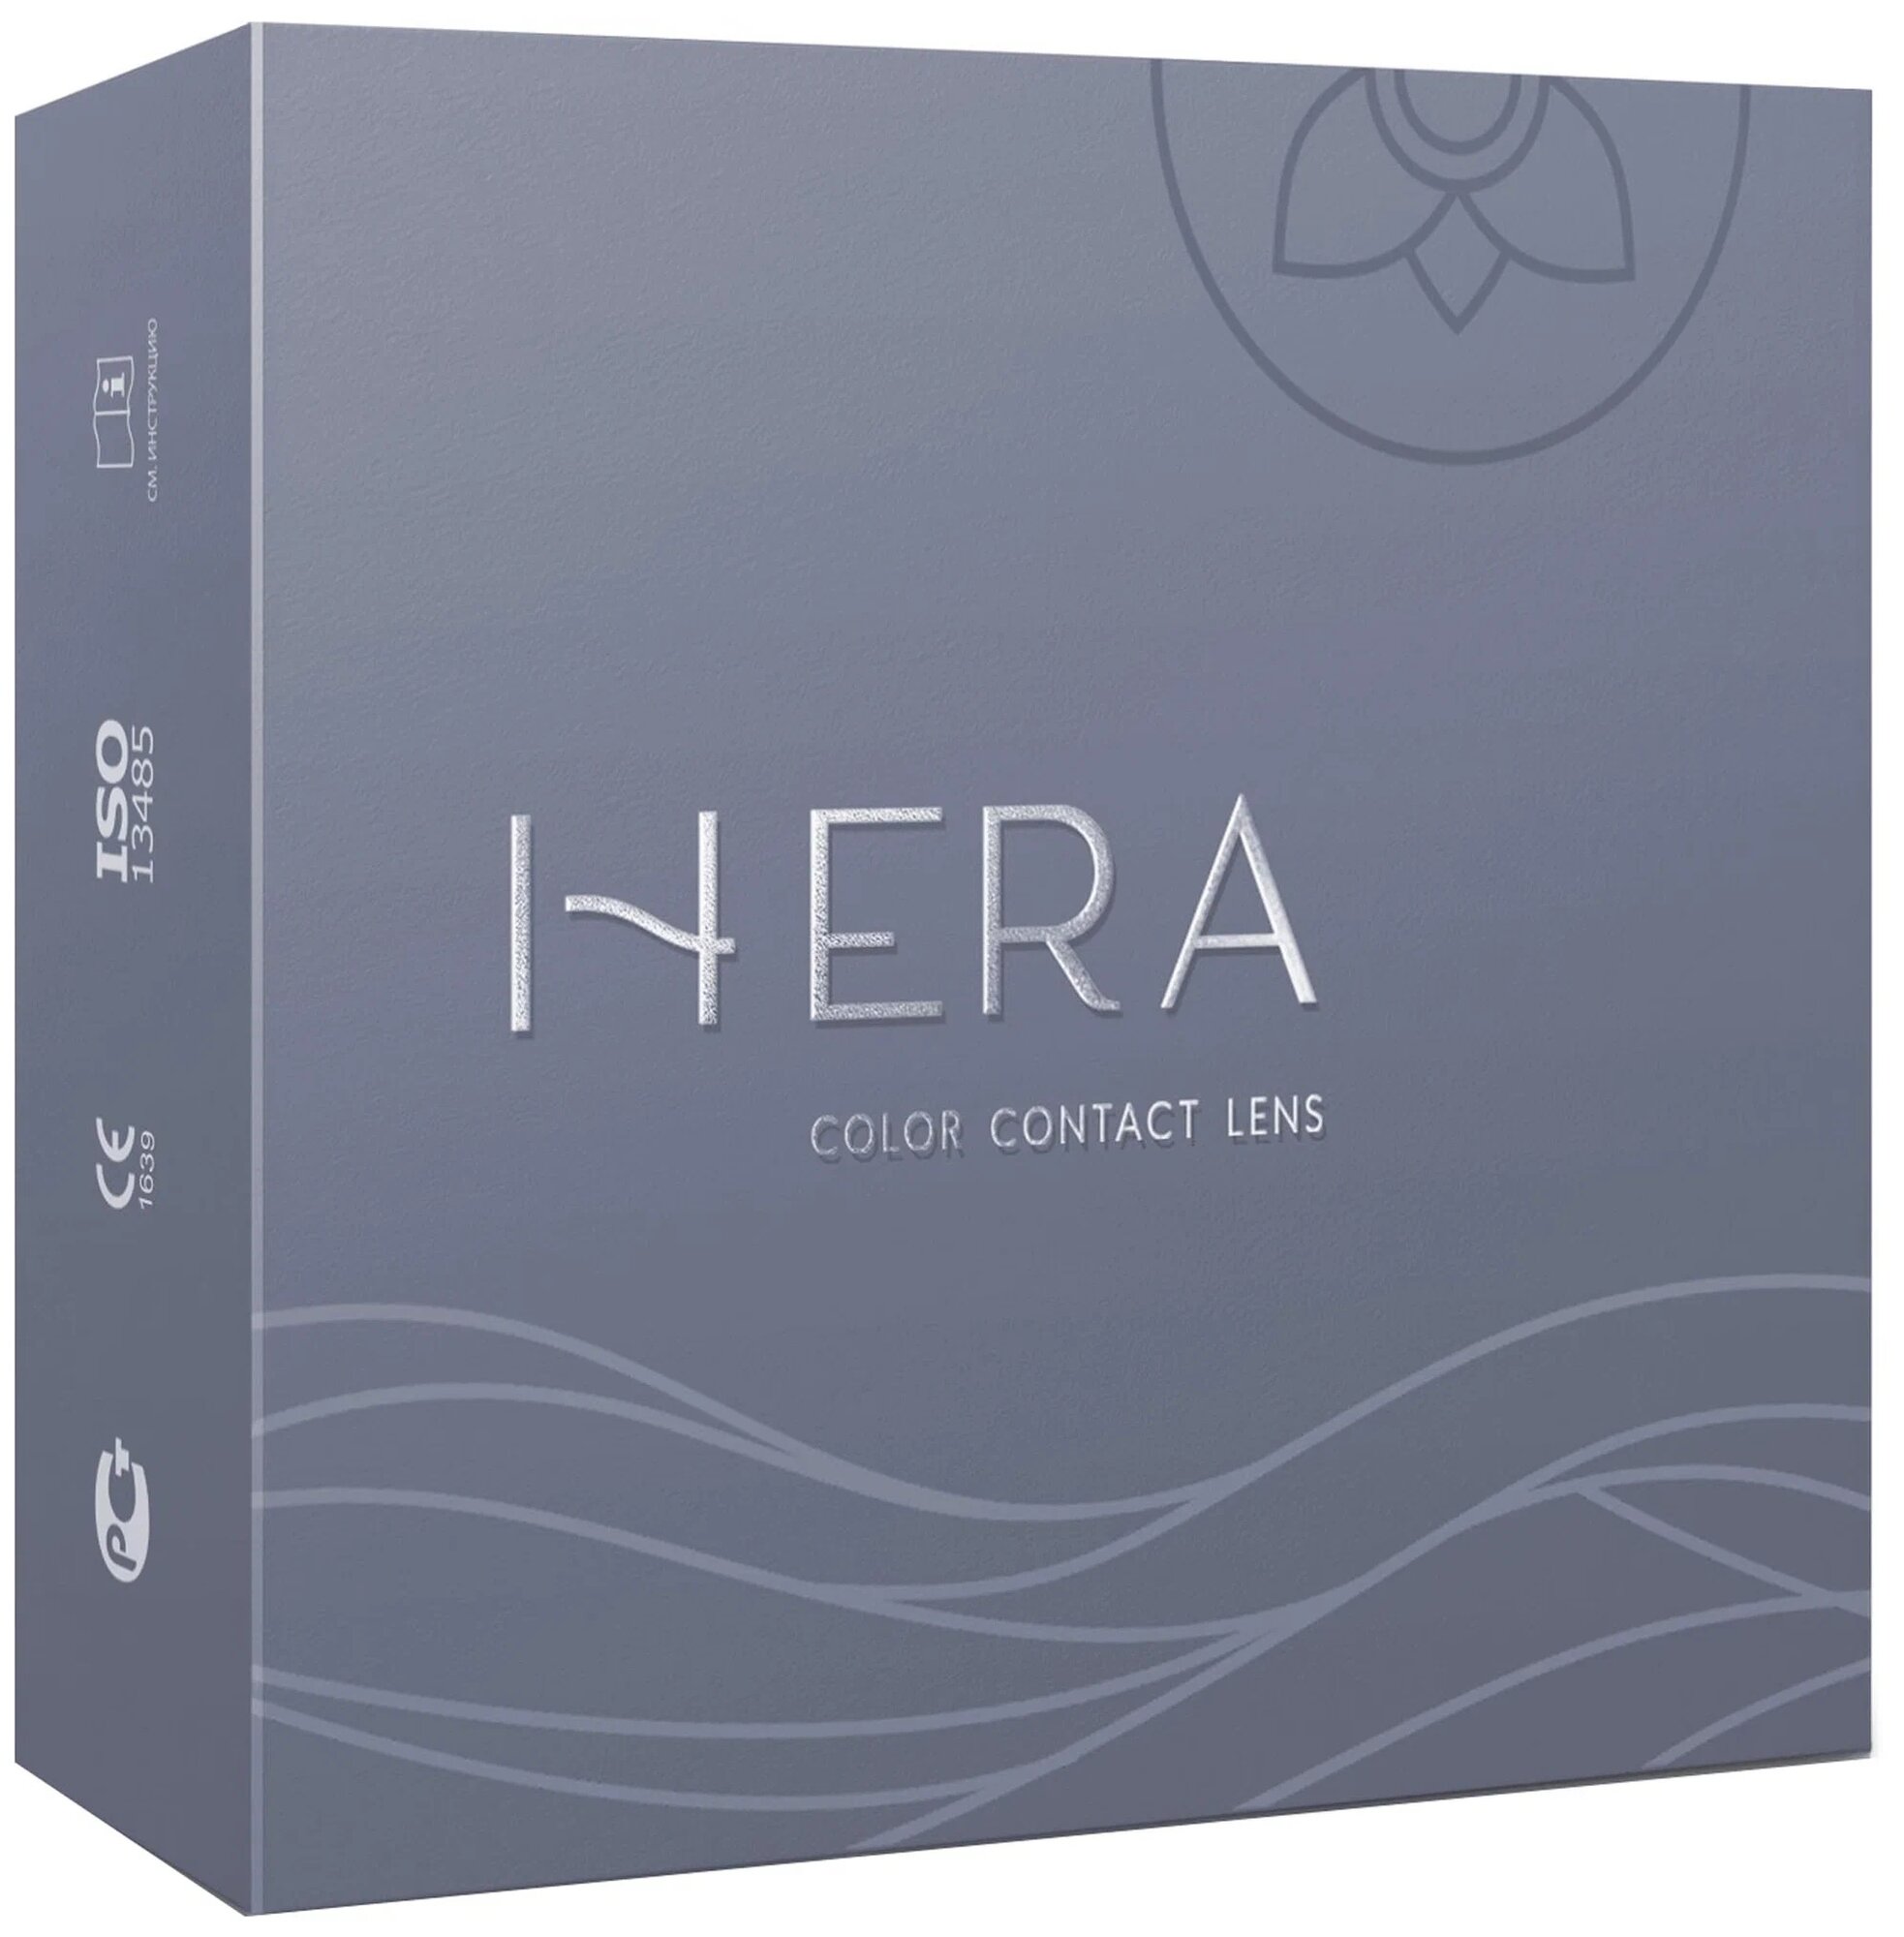 Hera Two-Tone Party 2 линзы В упаковке 2 штуки Цвет Blue Оптическая сила -1 Радиус кривизны 8.6